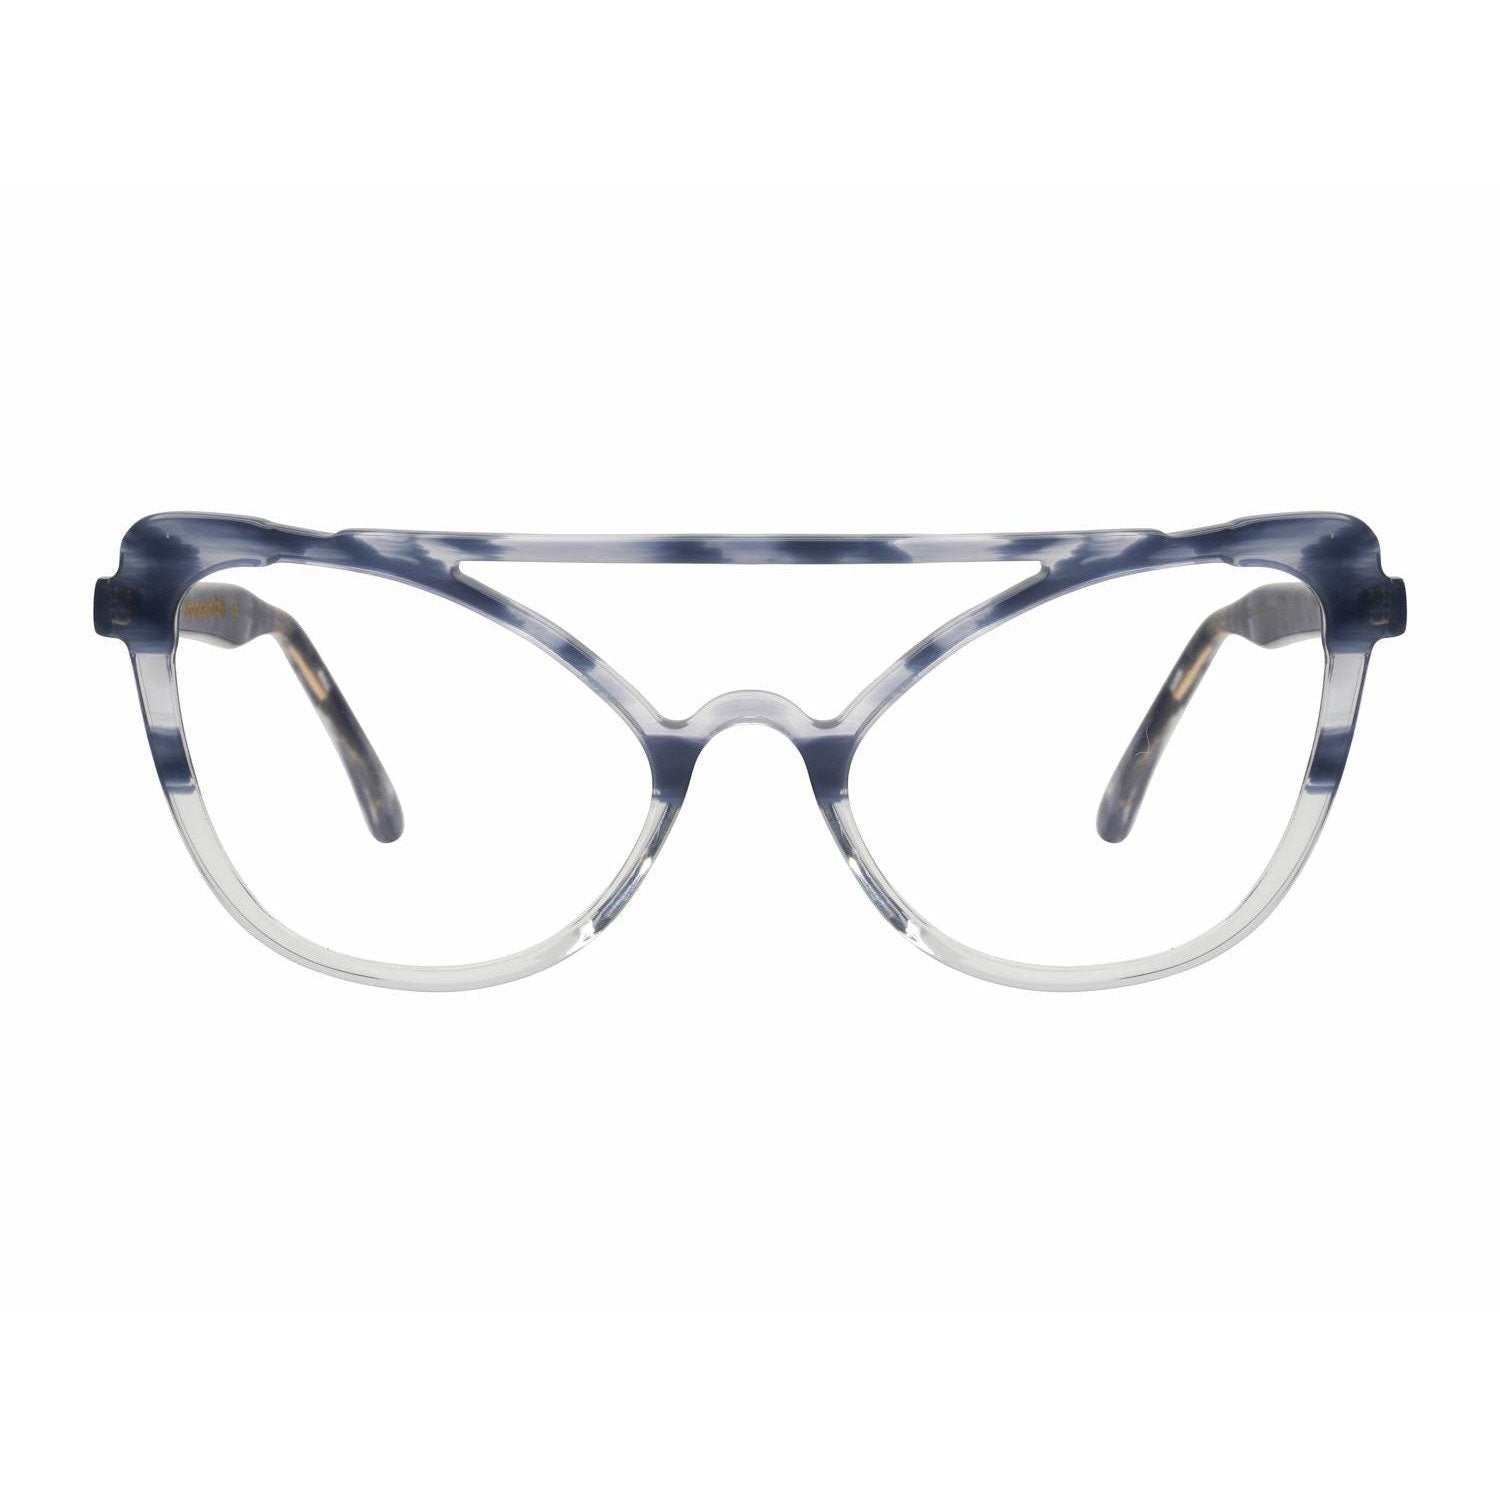 Gattara - Azzurro - Cibelle Eyewear